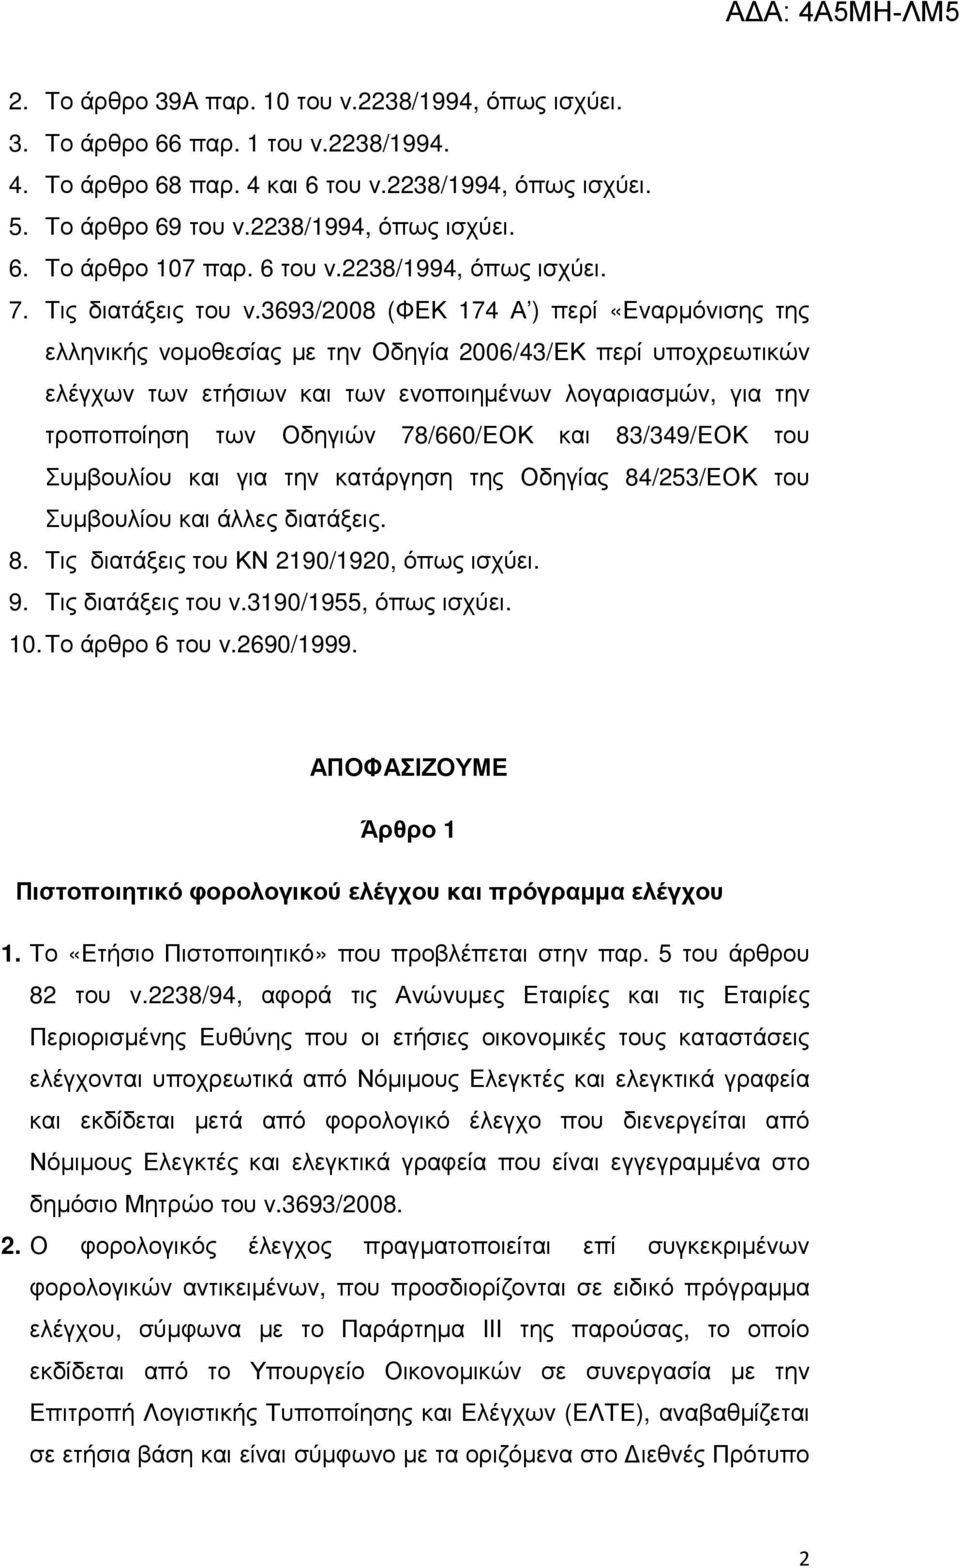 3693/2008 (ΦΕΚ 174 Α ) περί «Εναρµόνισης της ελληνικής νοµοθεσίας µε την Οδηγία 2006/43/ΕΚ περί υποχρεωτικών ελέγχων των ετήσιων και των ενοποιηµένων λογαριασµών, για την τροποποίηση των Οδηγιών